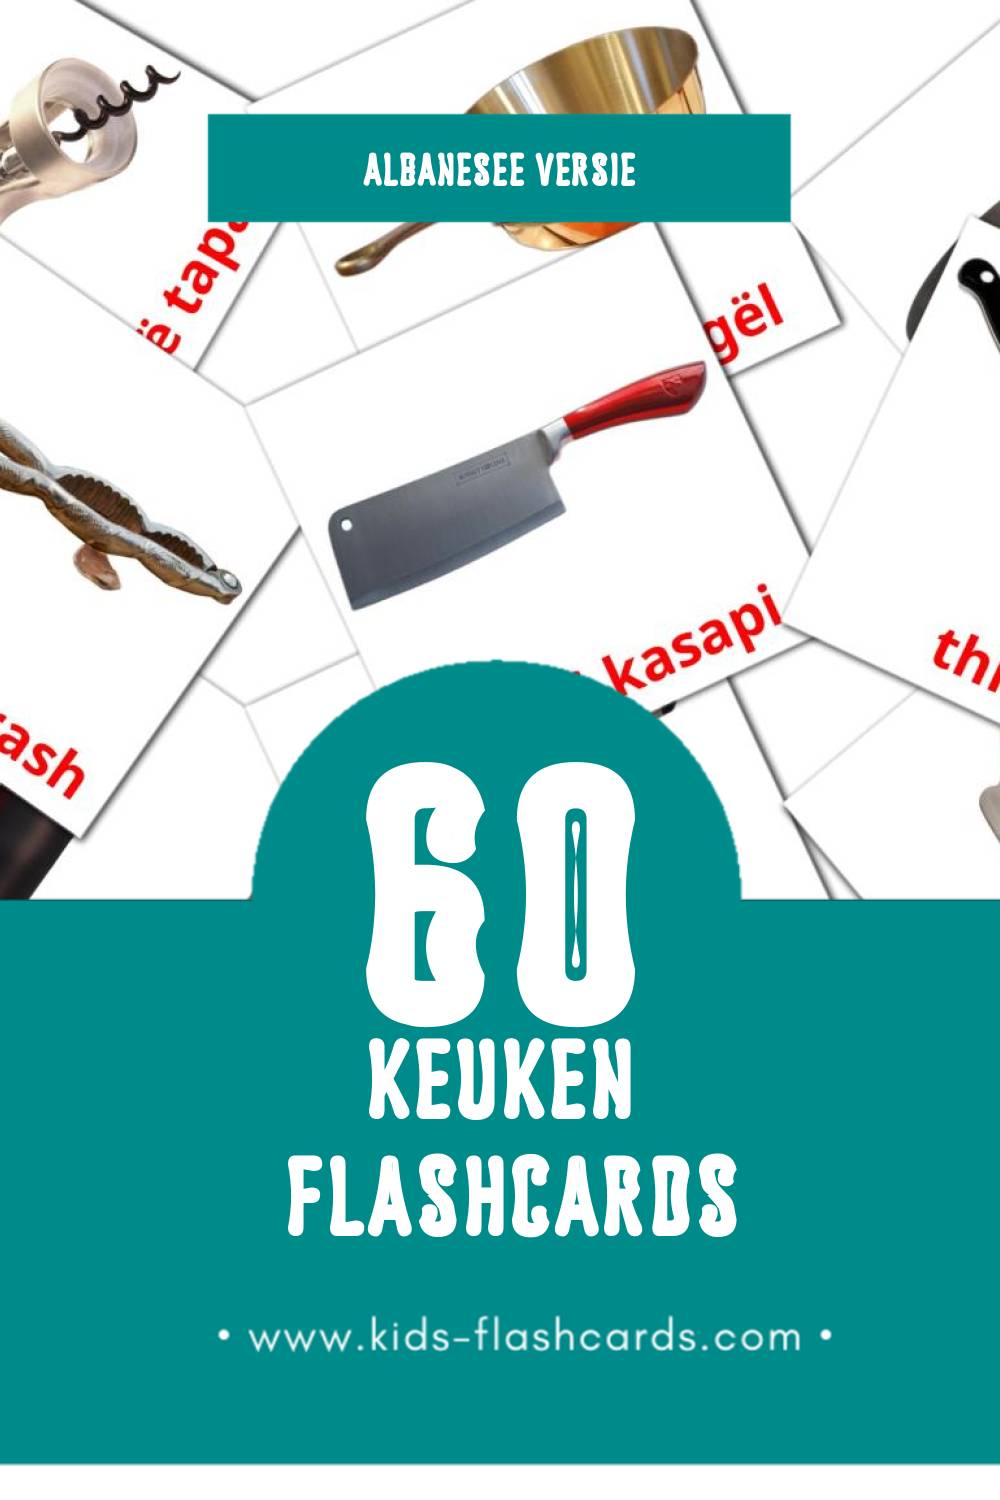 Visuele Kuzhina Flashcards voor Kleuters (60 kaarten in het Albanese)